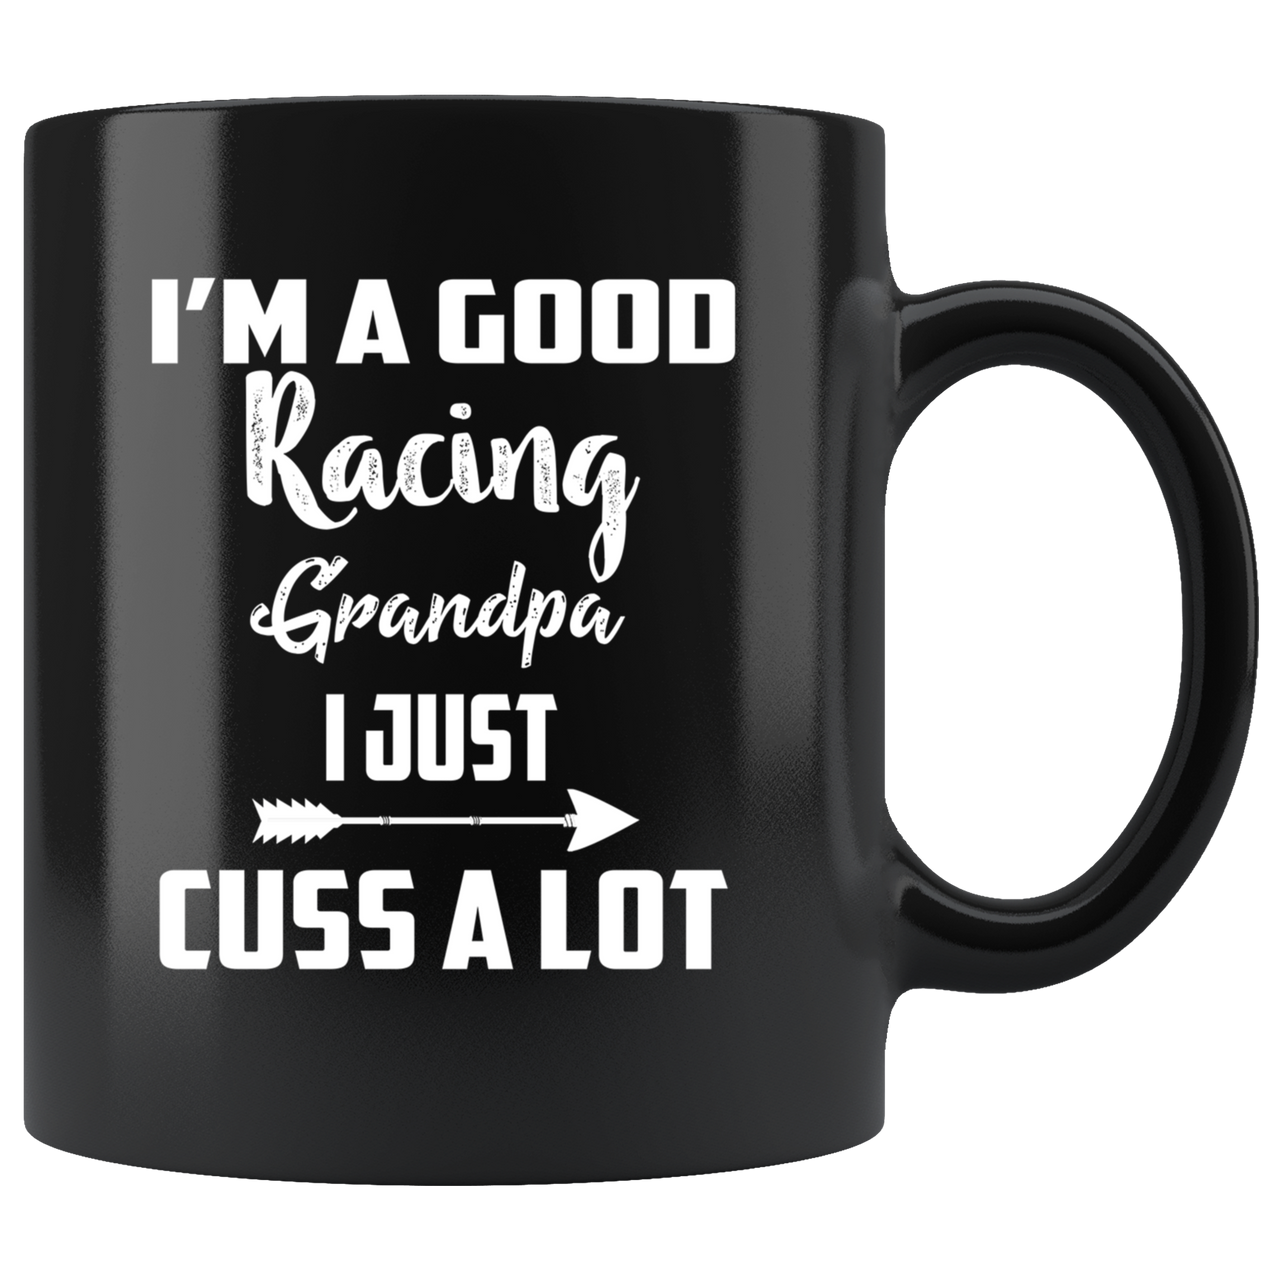 I'm A Good Racing Grandpa I Just Cuss A Lot Mug!